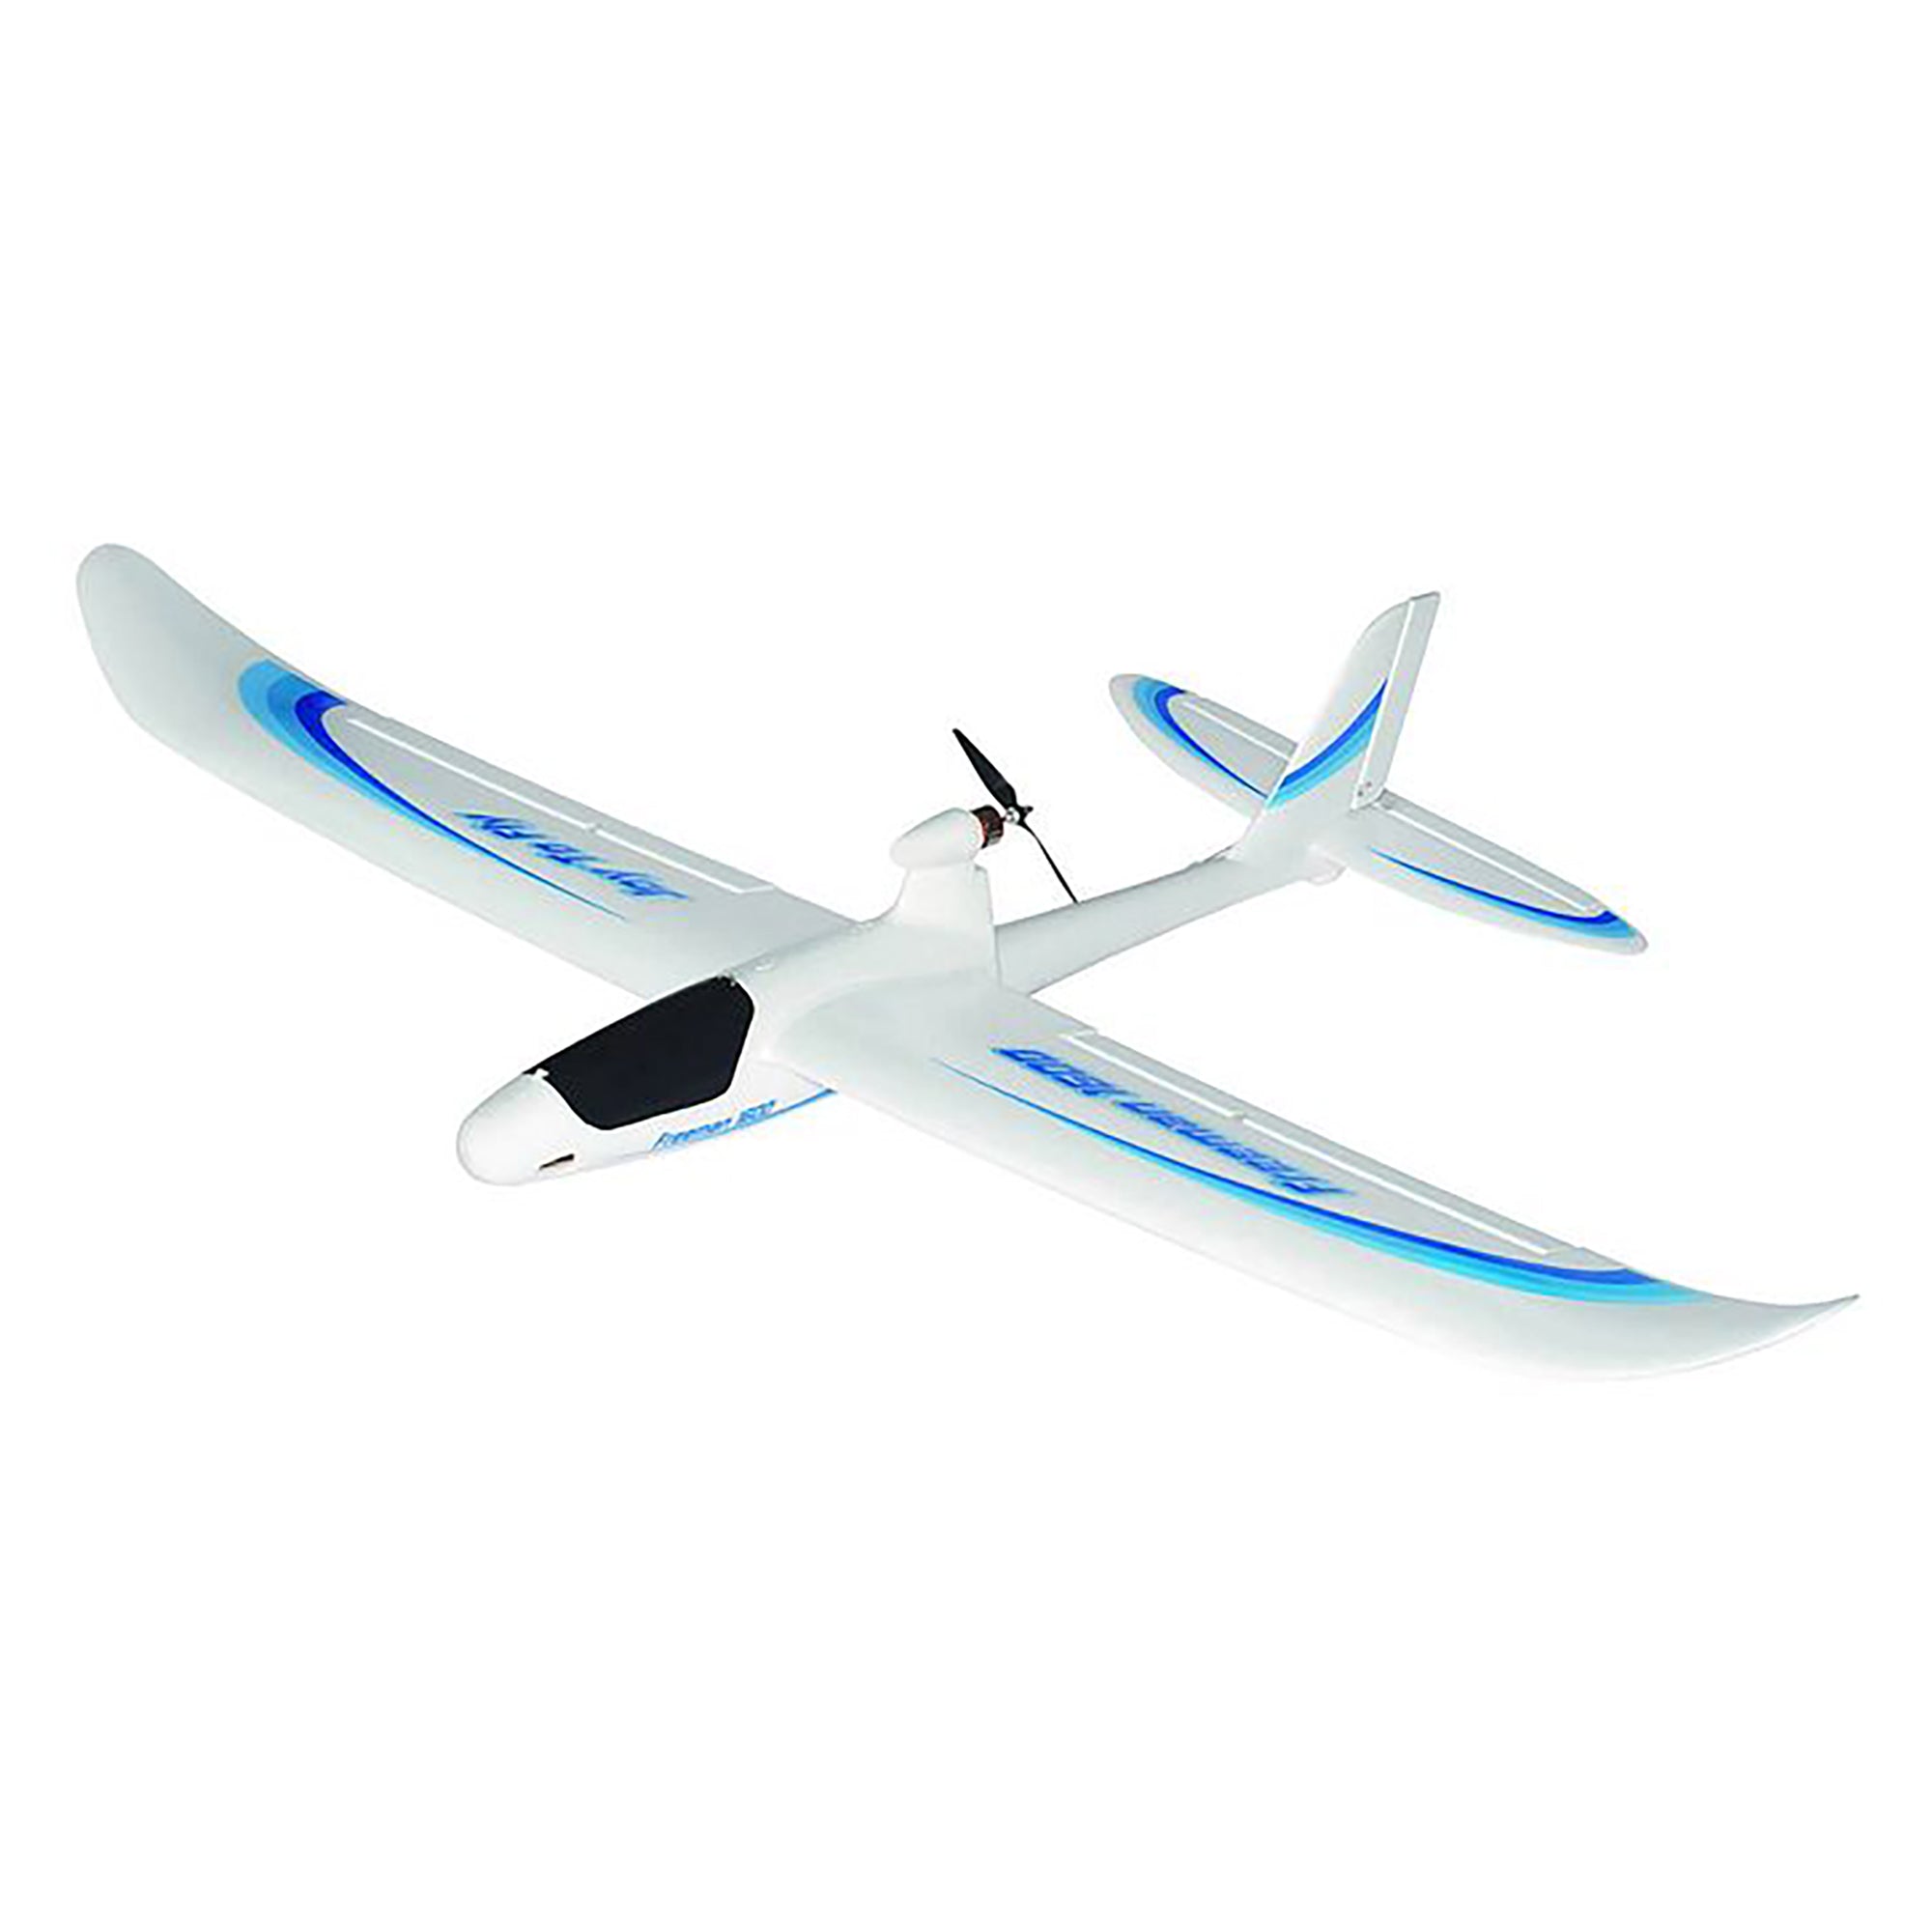 Joysway 6103 Freeman 1600 V3 2.4GHz RTF Brushless Powered RC Glider